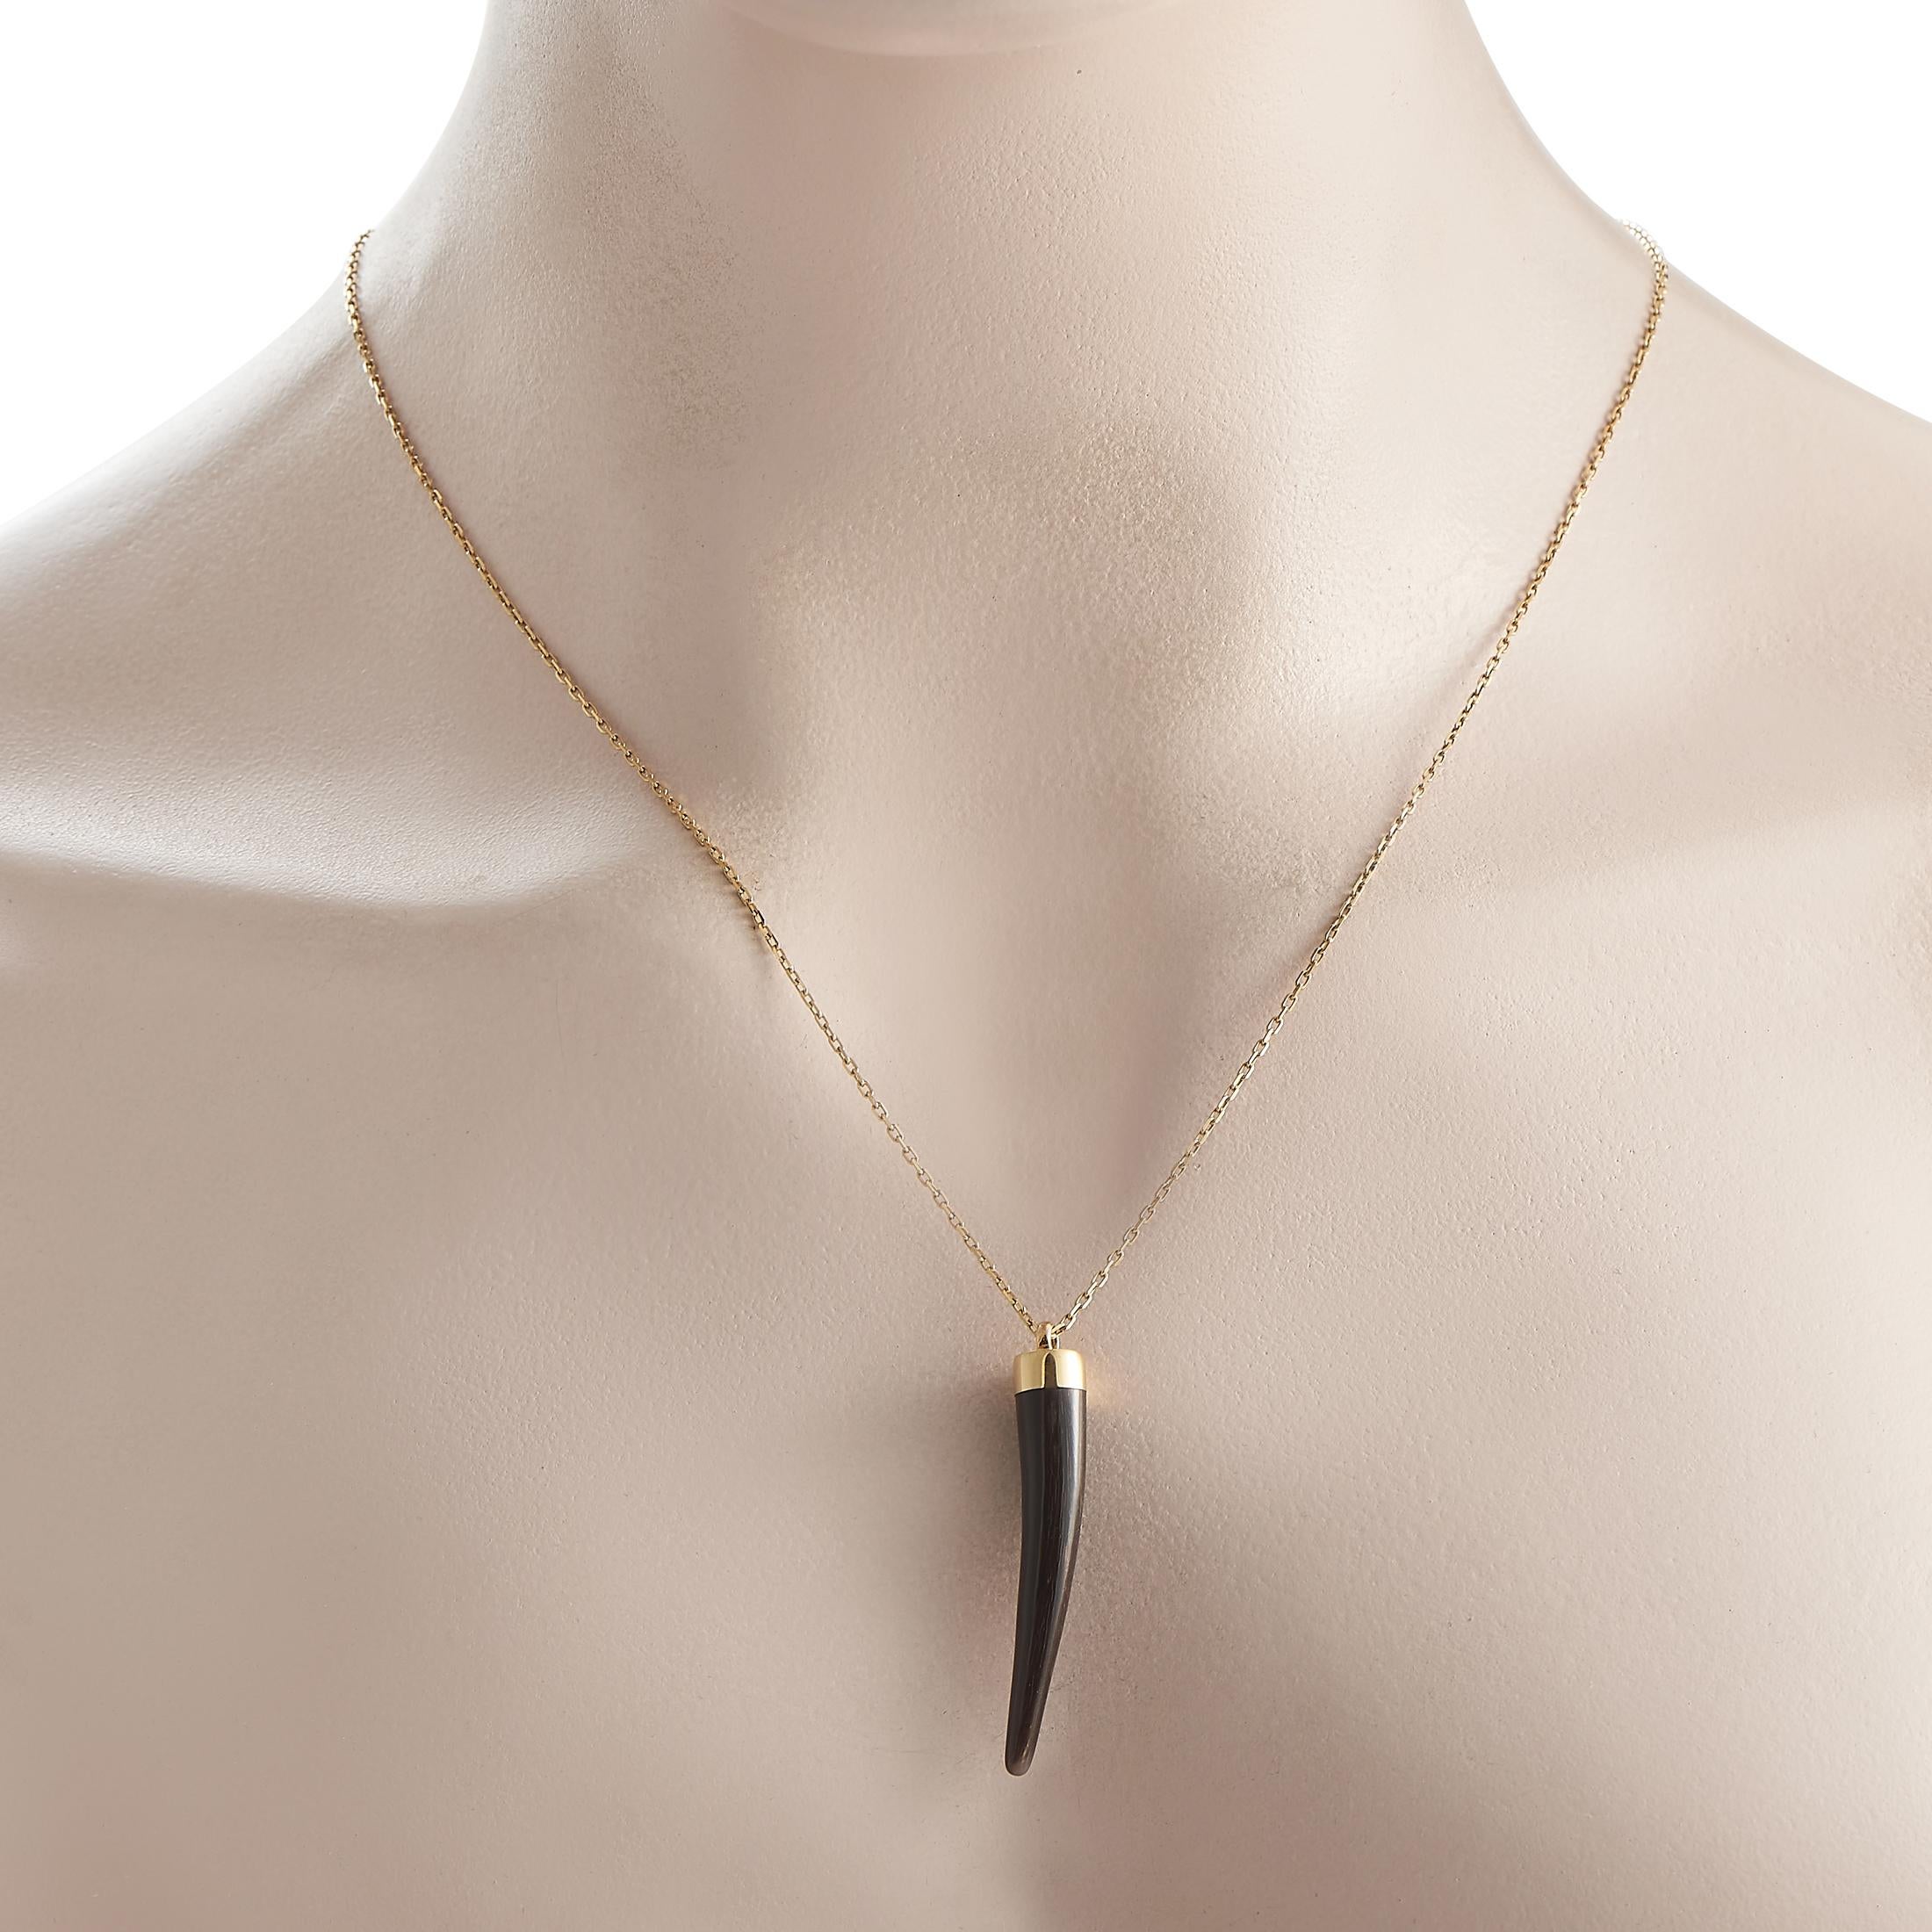 Une amulette porte-bonheur luxueuse et décalée de la maison italienne de haute couture Gucci. Ce collier présente un pendentif en corne d'onyx noir suspendu à une chaîne en or jaune 18 carats. Le pendentif mesure 1,5 par 0,25 tandis que la chaîne du